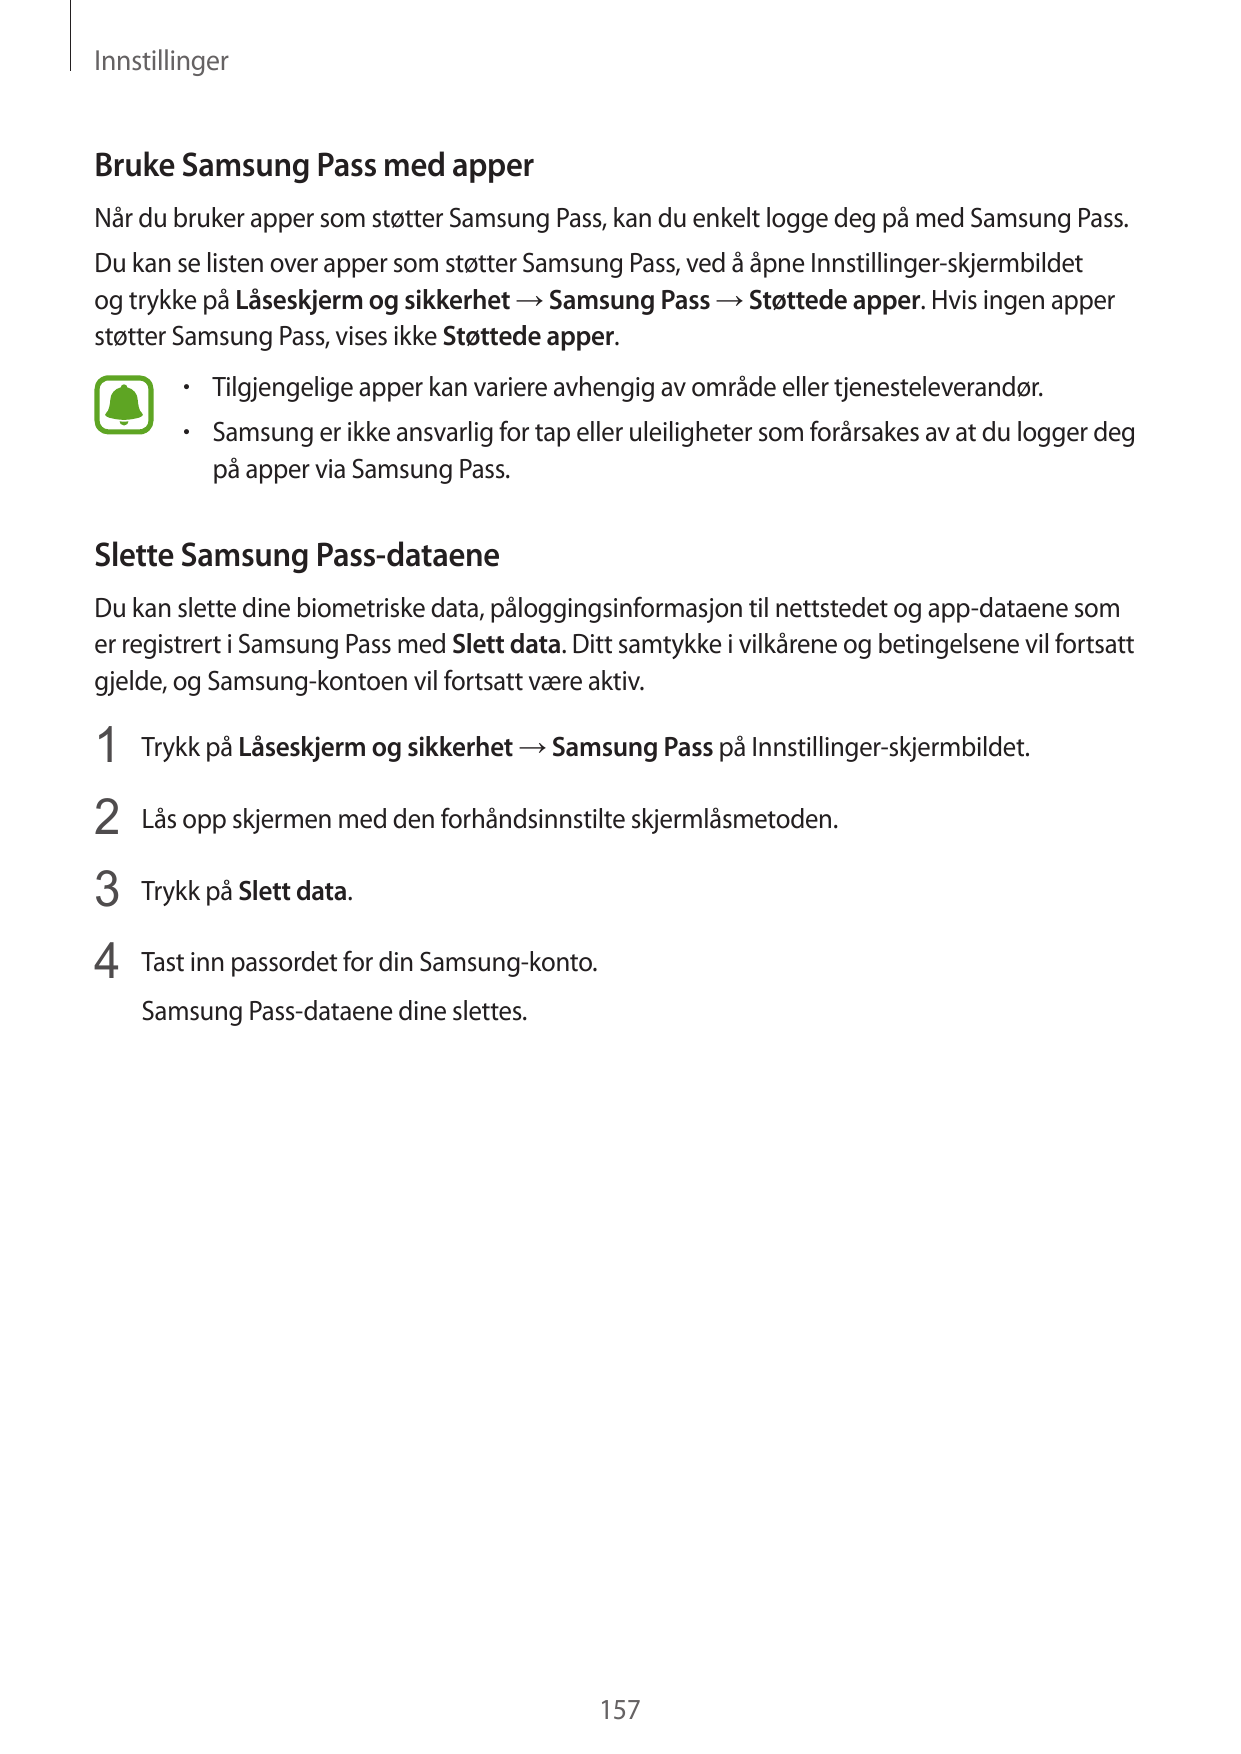 InnstillingerBruke Samsung Pass med apperNår du bruker apper som støtter Samsung Pass, kan du enkelt logge deg på med Samsung Pa